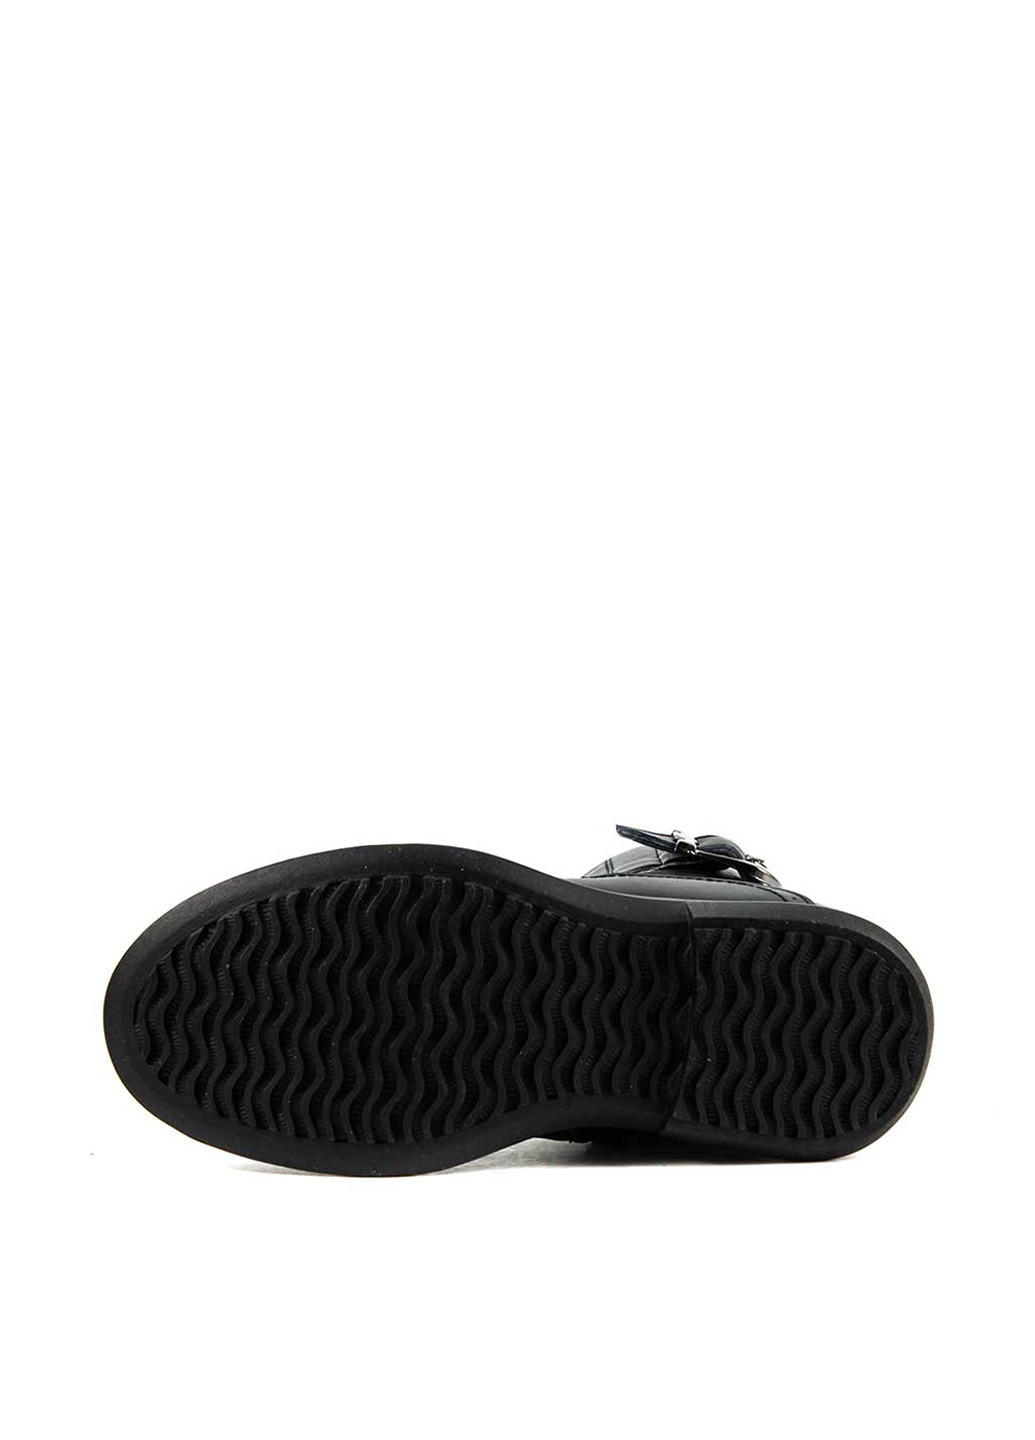 Черные кэжуал зимние ботинки Калория